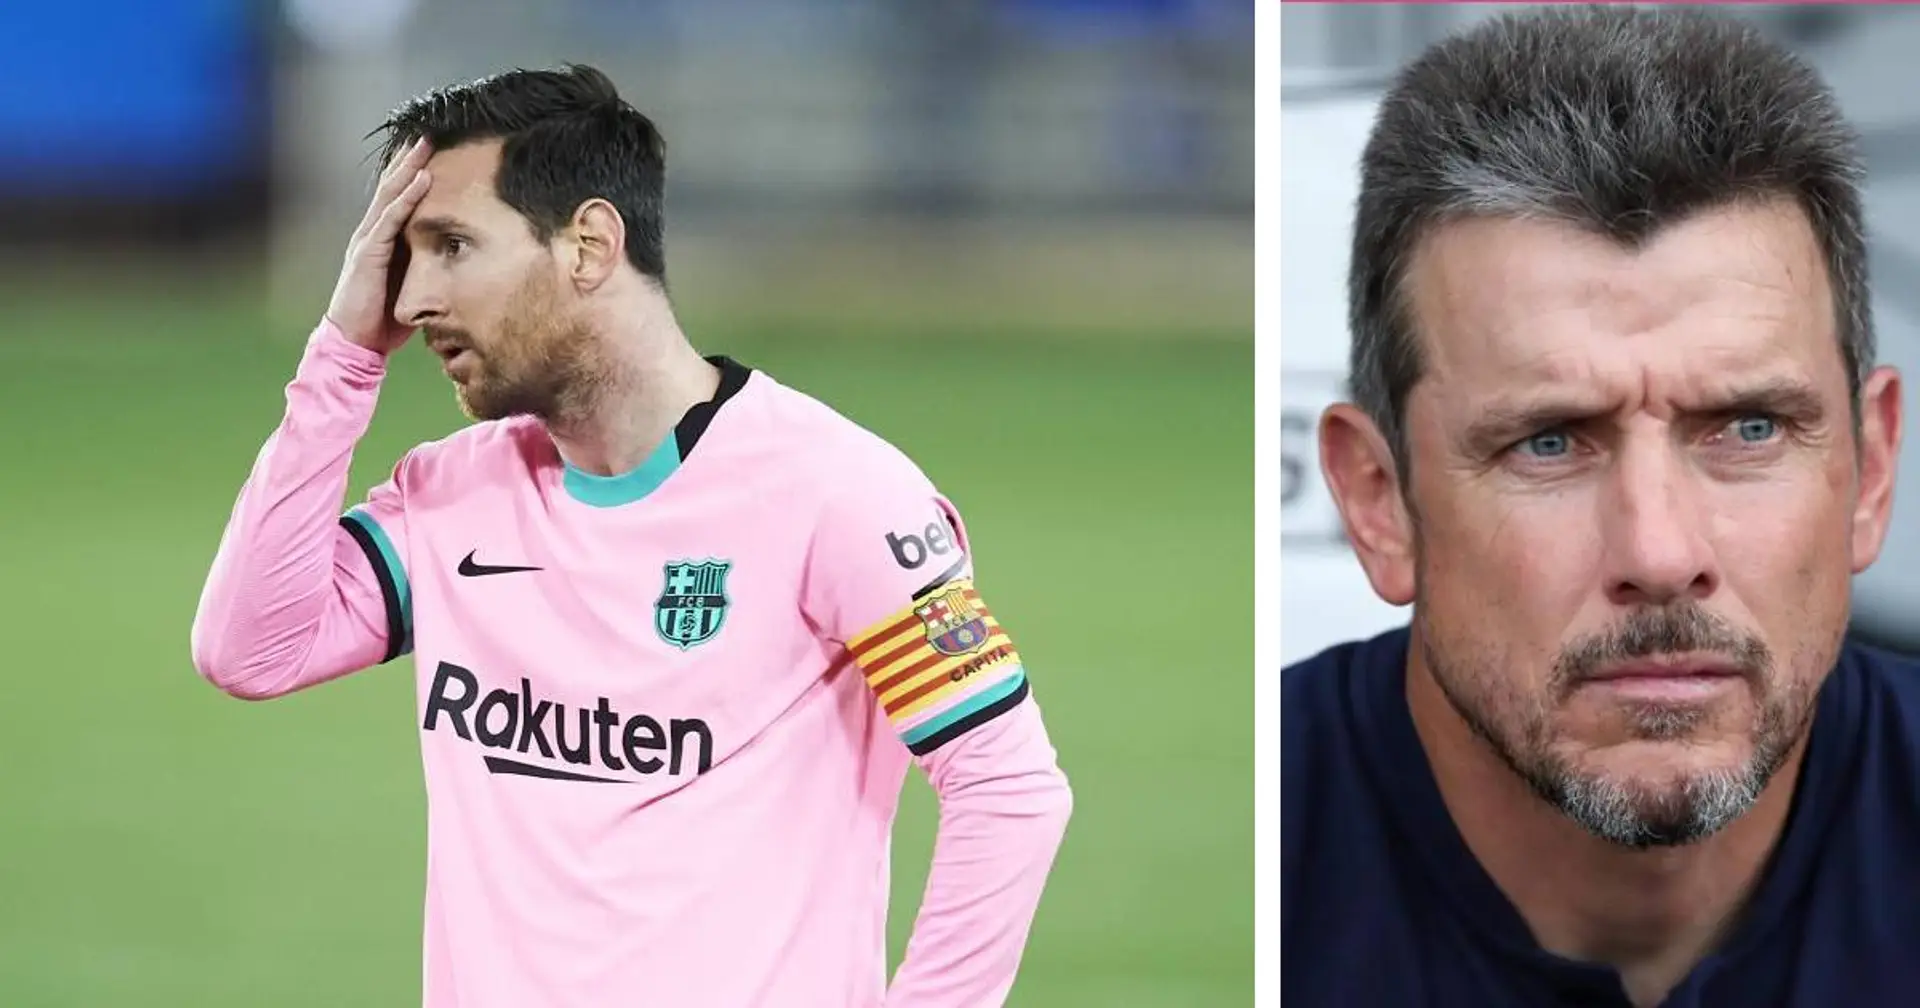 "Il veut toujours le maximum de son entourage" : l'ancien entraîneur assistant du Barça, Unzue, explique à quel point jouer avec Messi pourrait être stressant